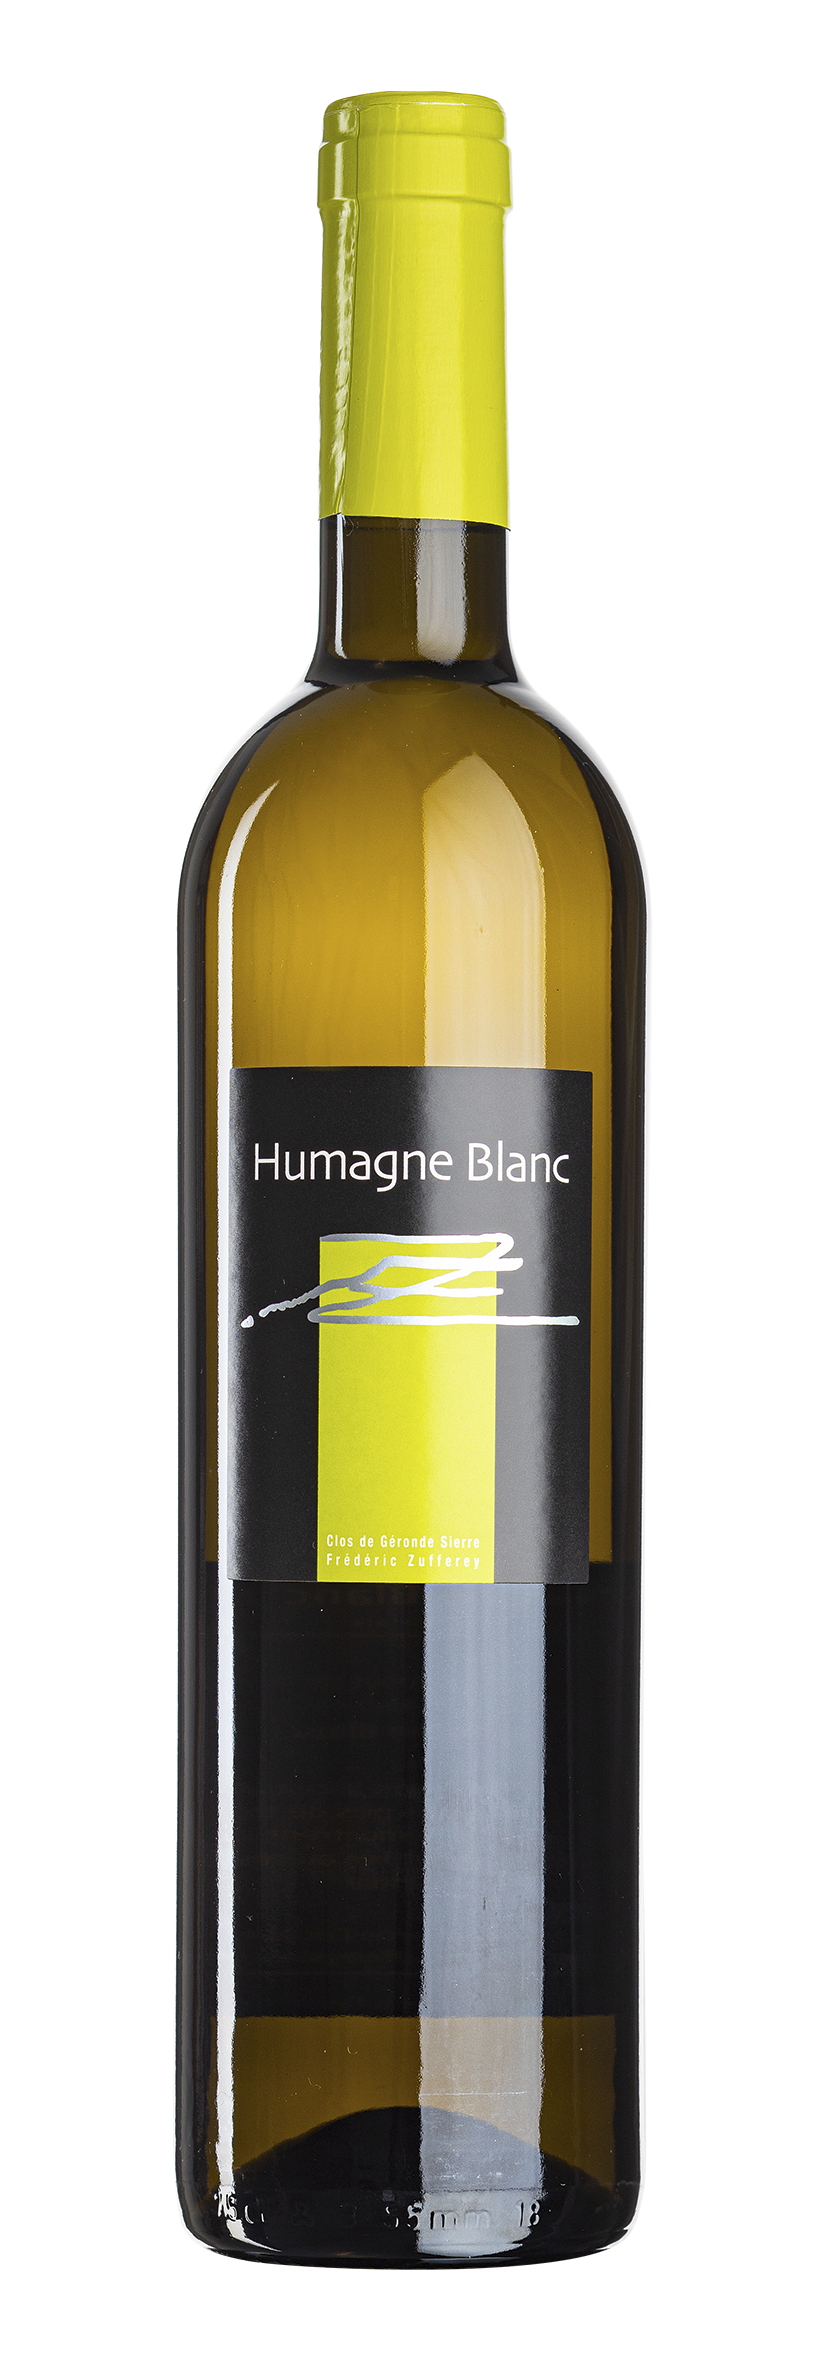 Valais AOC Humagne Blanc 2019